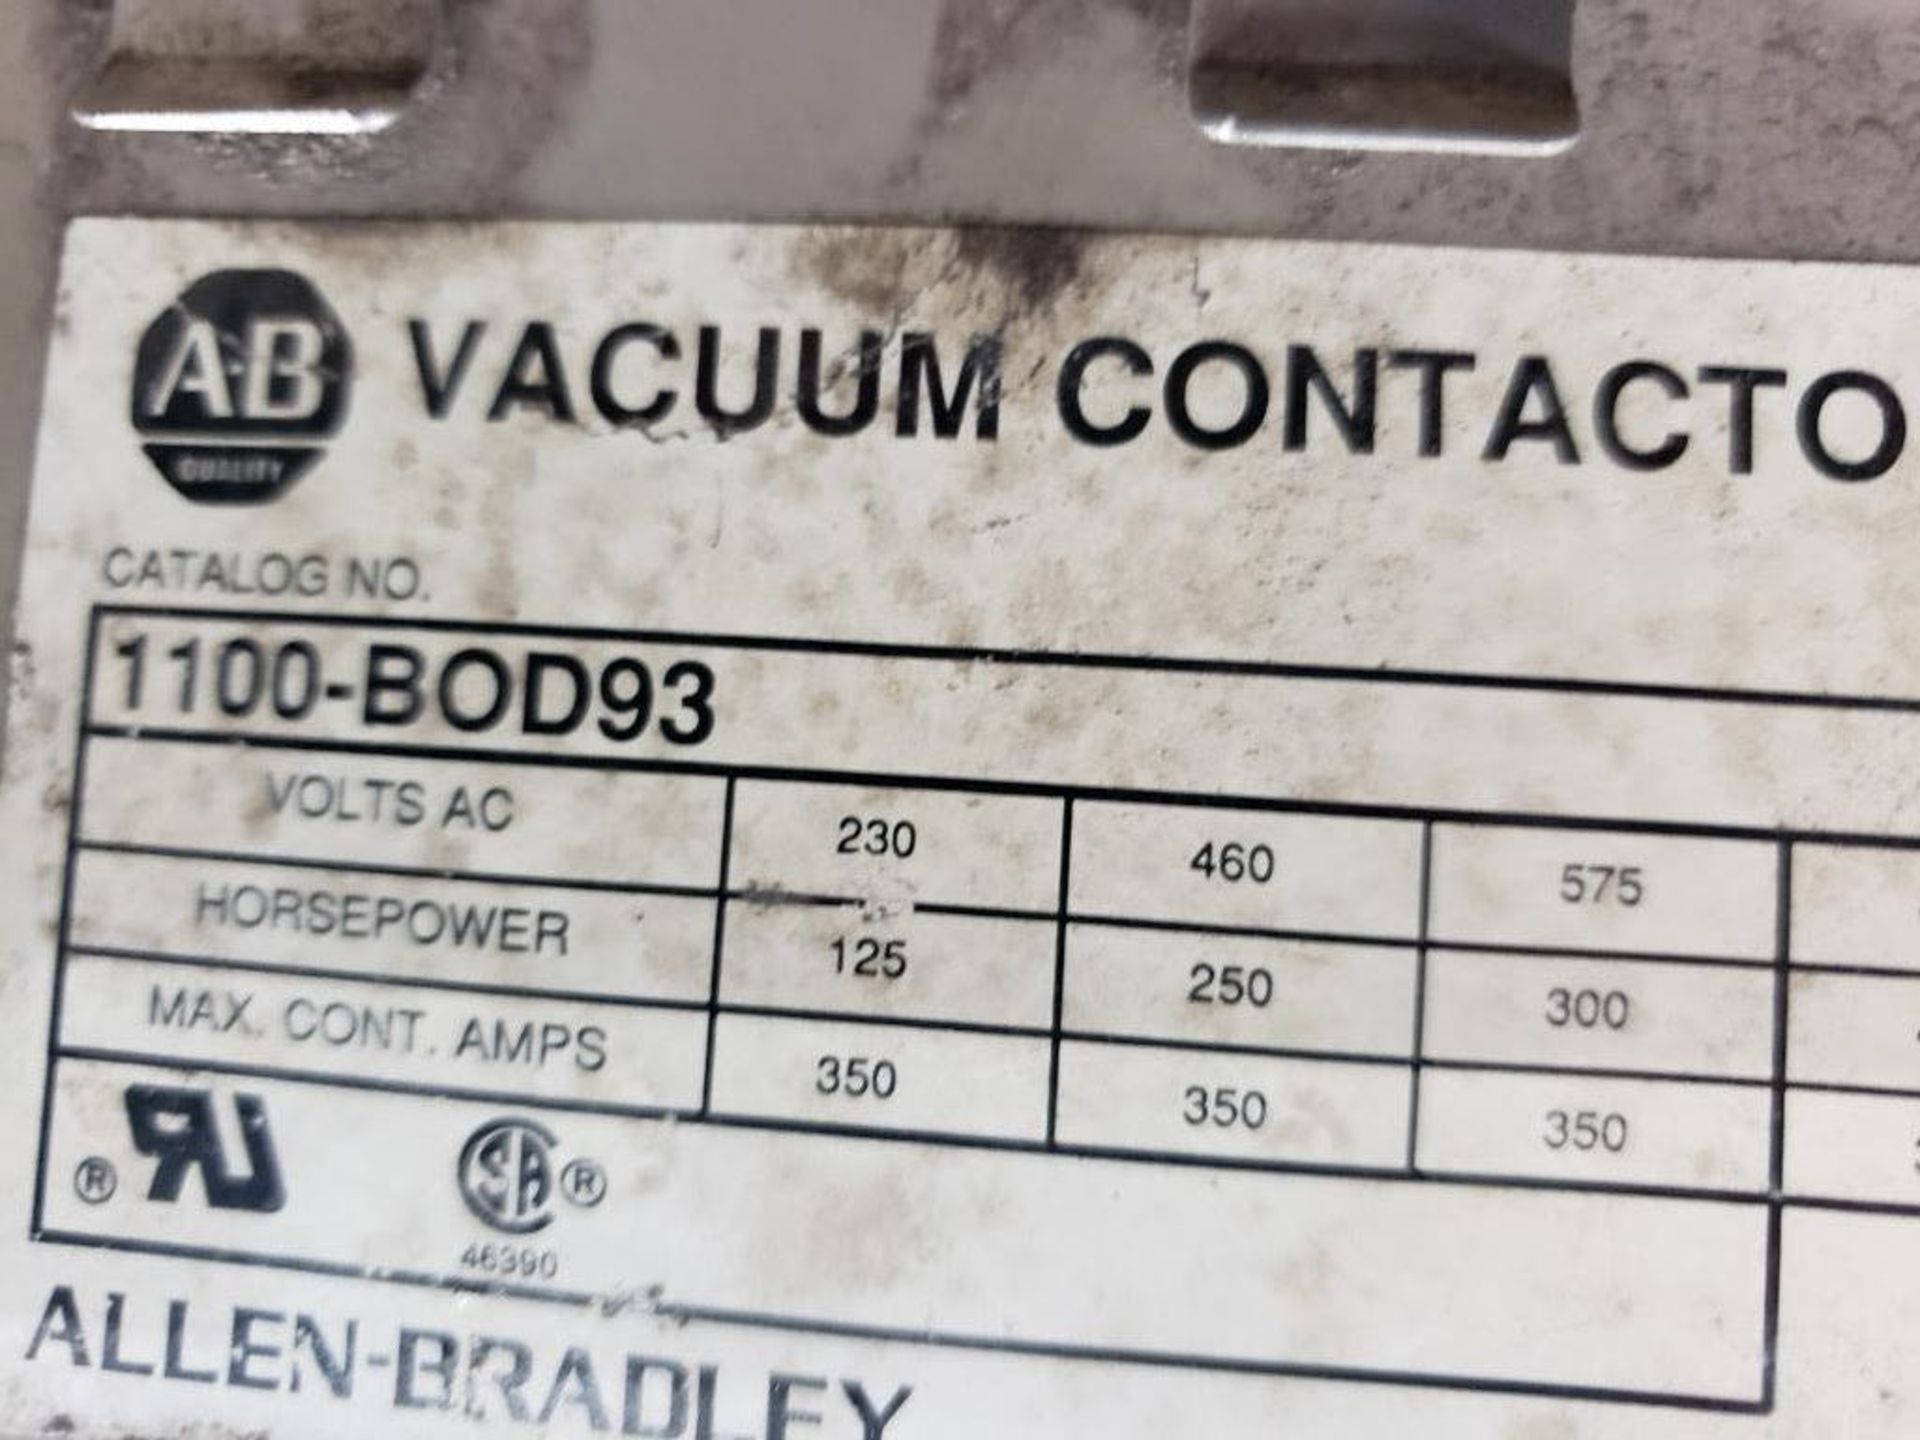 Allen Bradley vacuum contactor 1100-BOD93. - Image 4 of 5